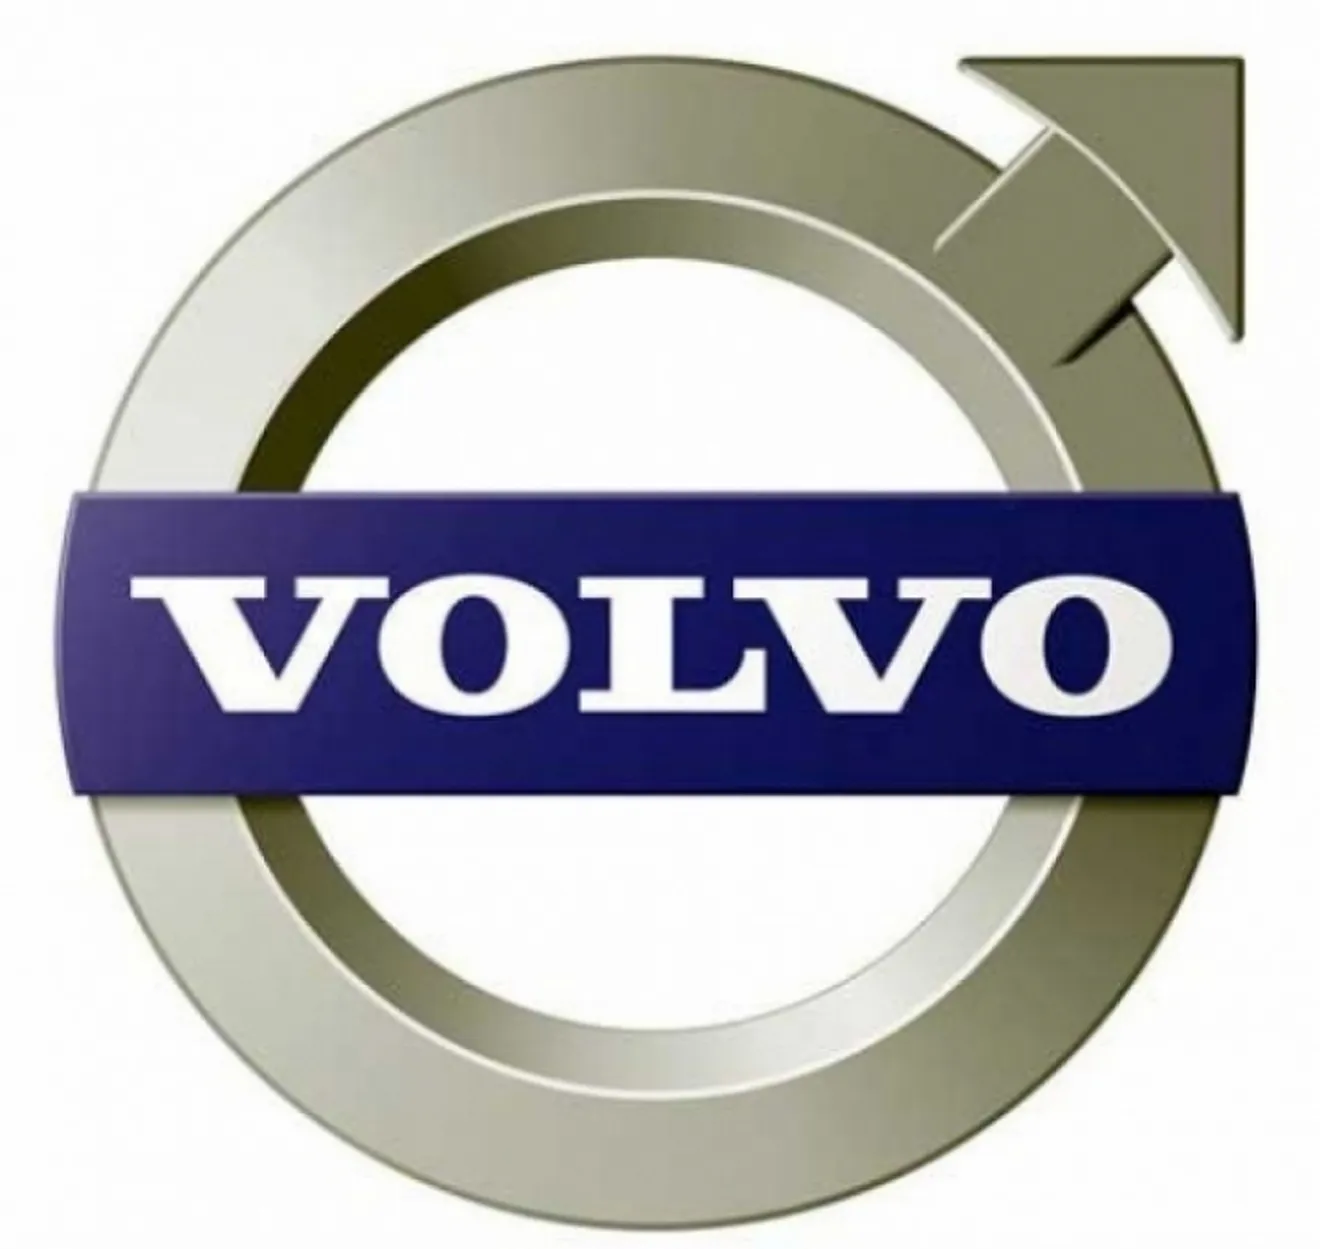 Oficial, Volvo es definitivamente una marca china